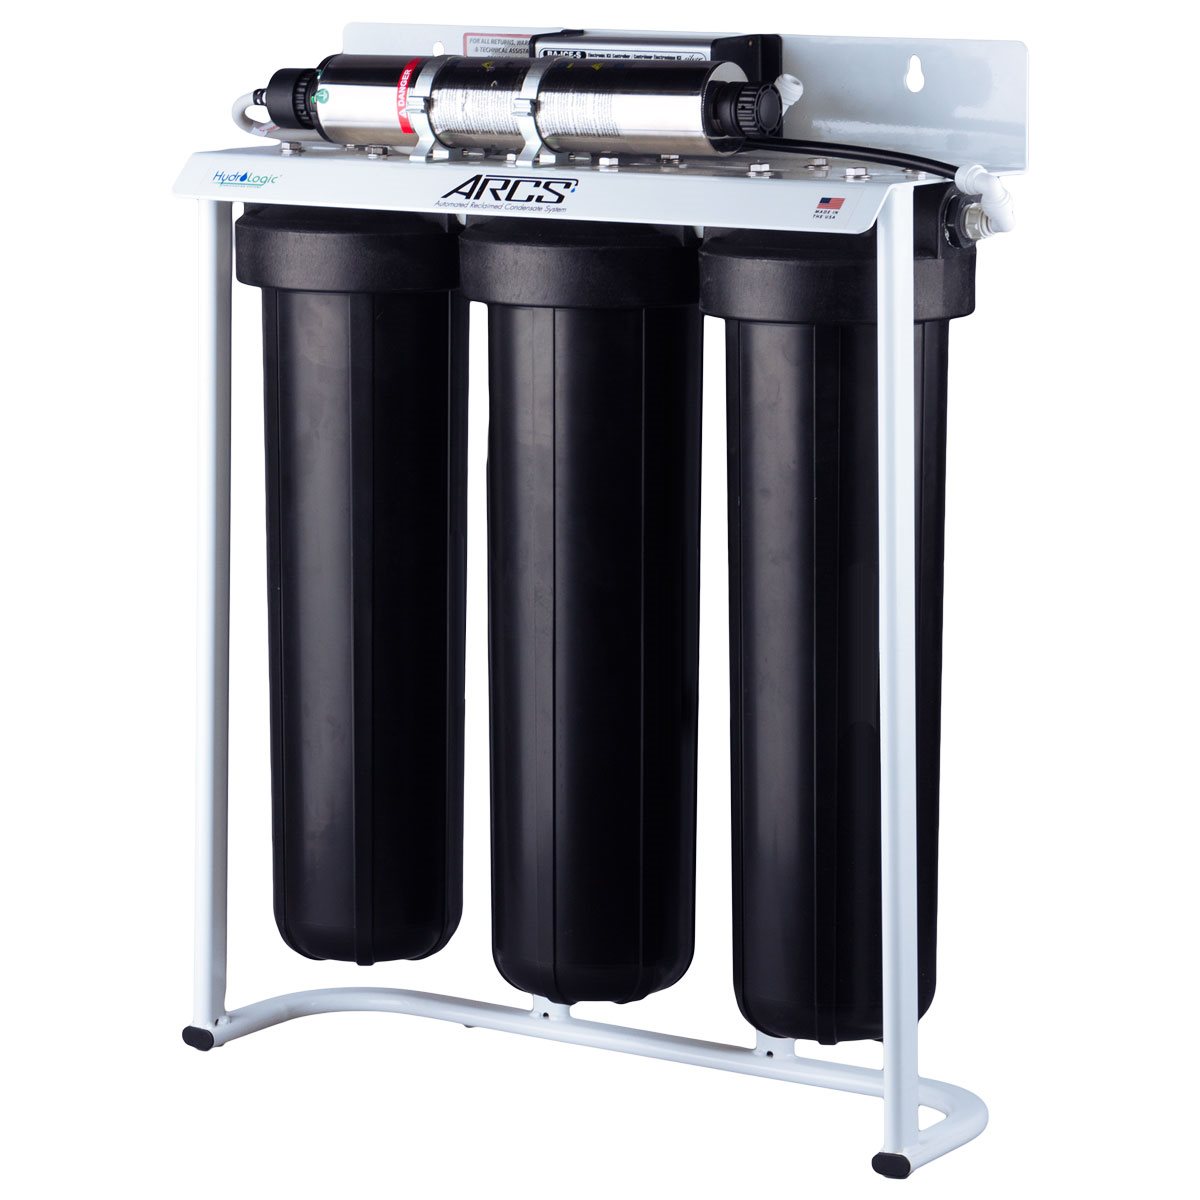 Product Image:Réseau de filtres du système ARCS HydroLogic